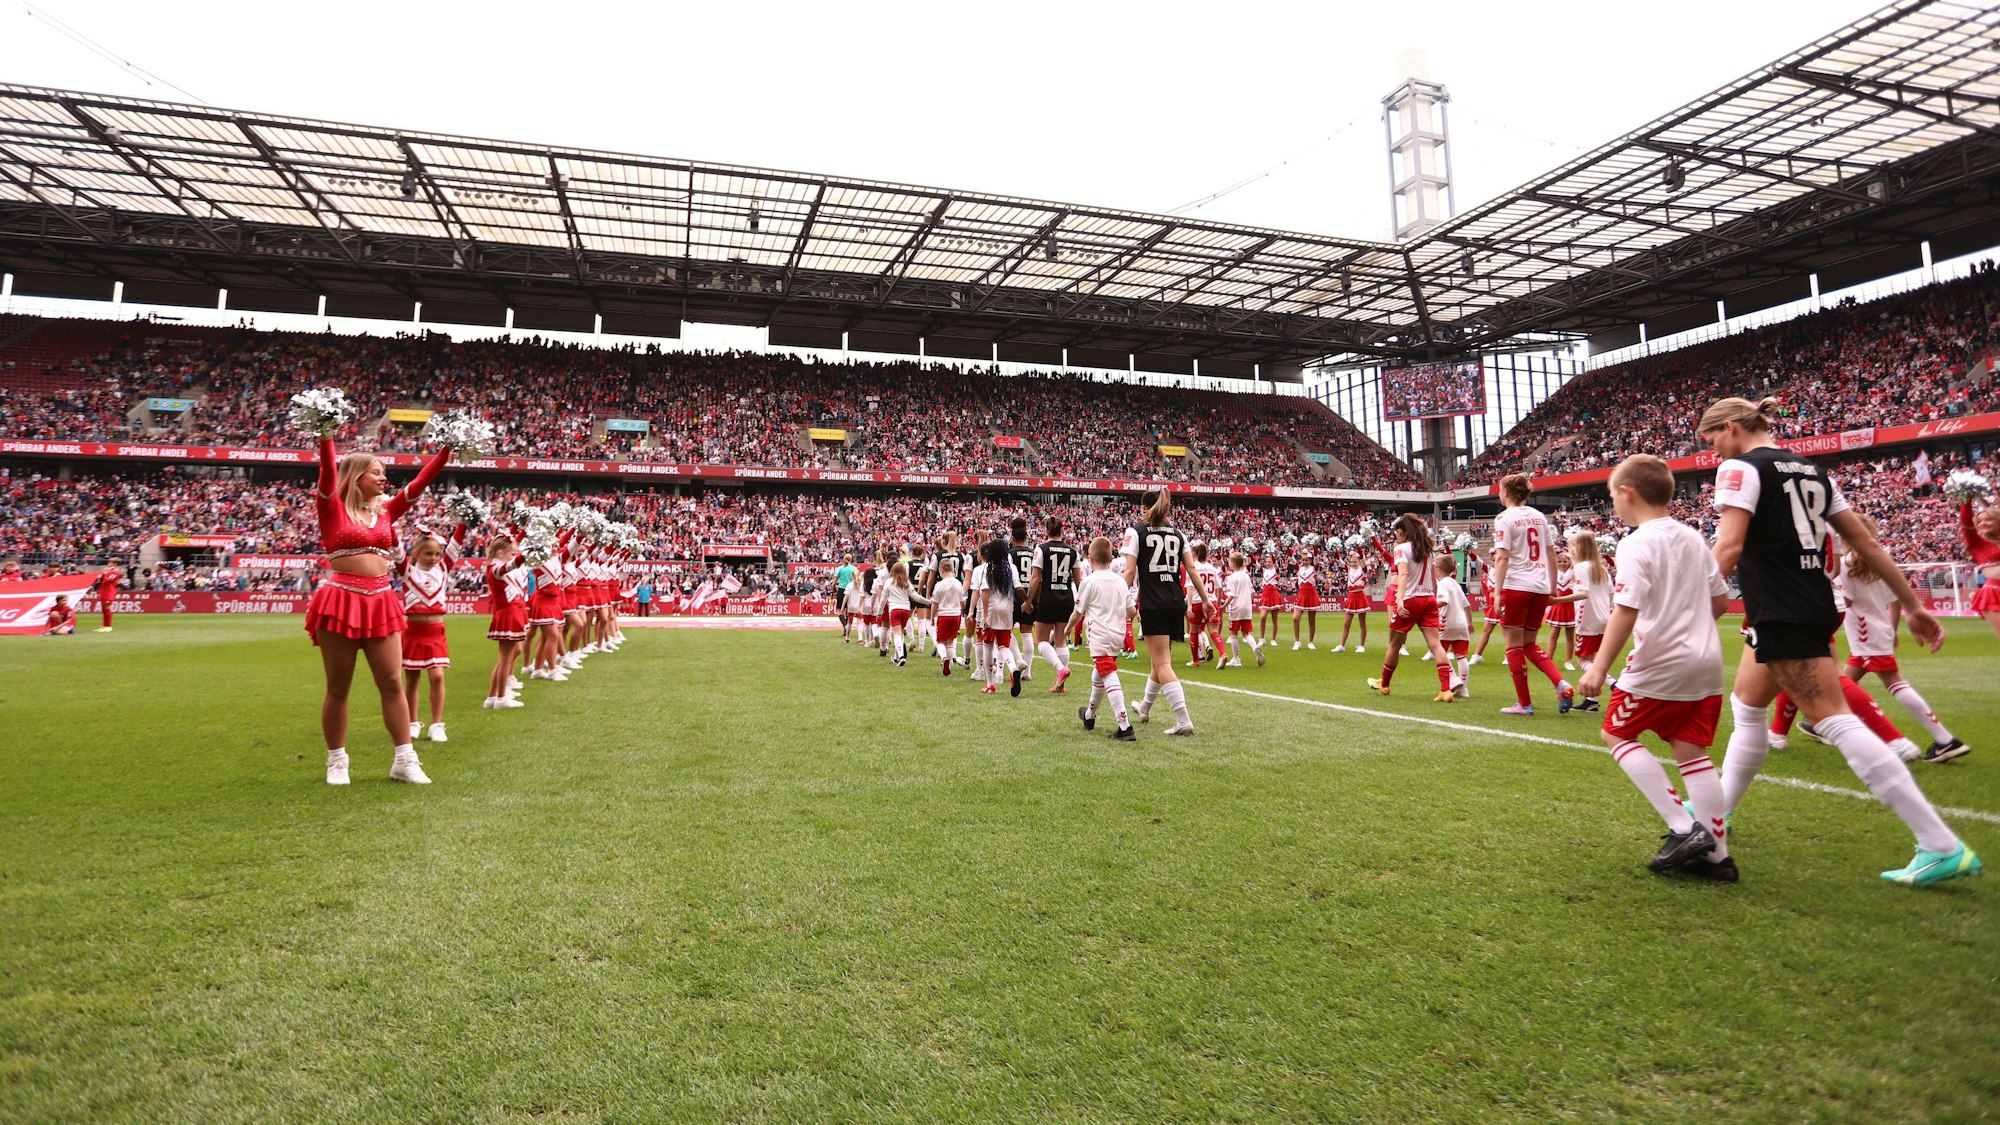 Im gut gefüllten Rhein-Energie-Stadion laufen die Spielerinnen des 1. FC Köln und von Eintracht Frankfurt im Rhein-Energie-Stadion ein.